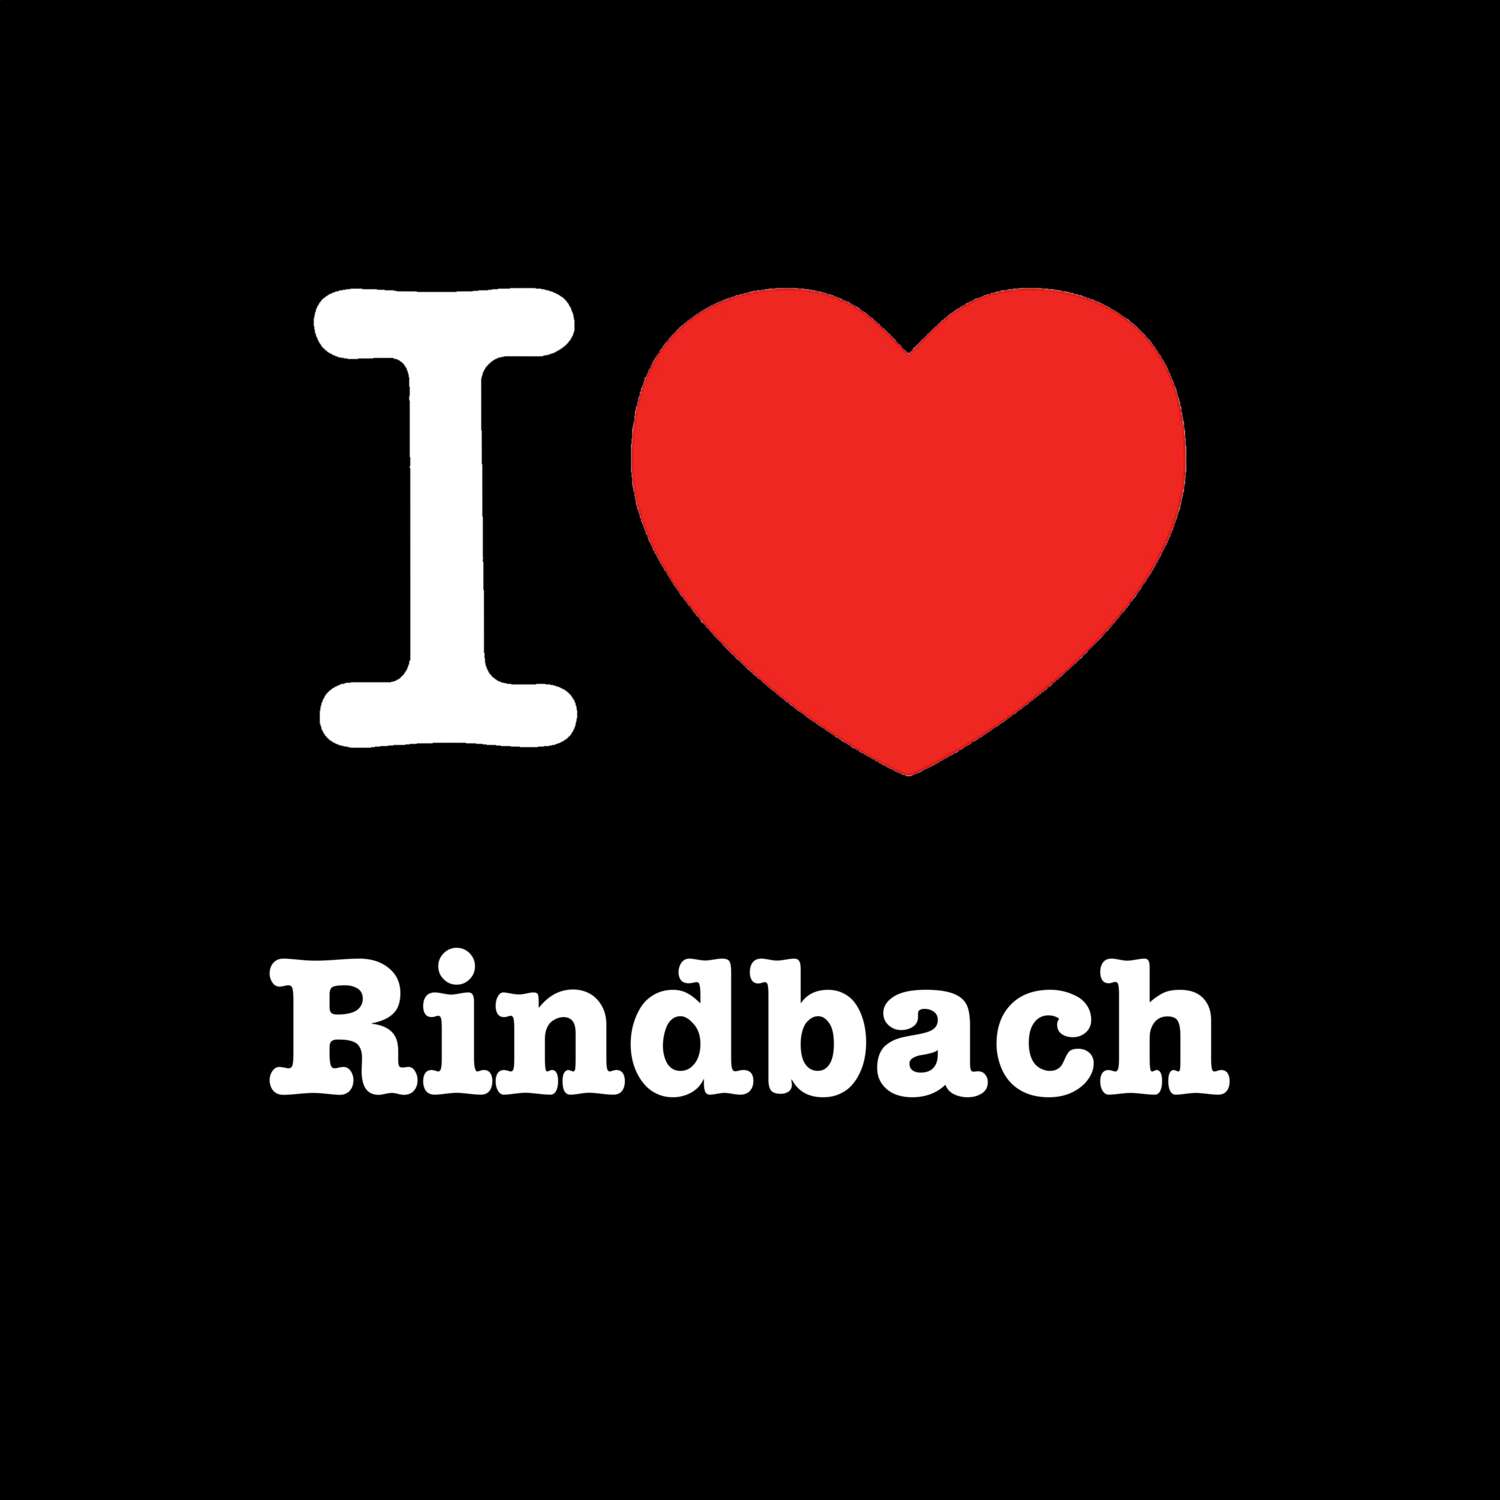 Rindbach T-Shirt »I love«